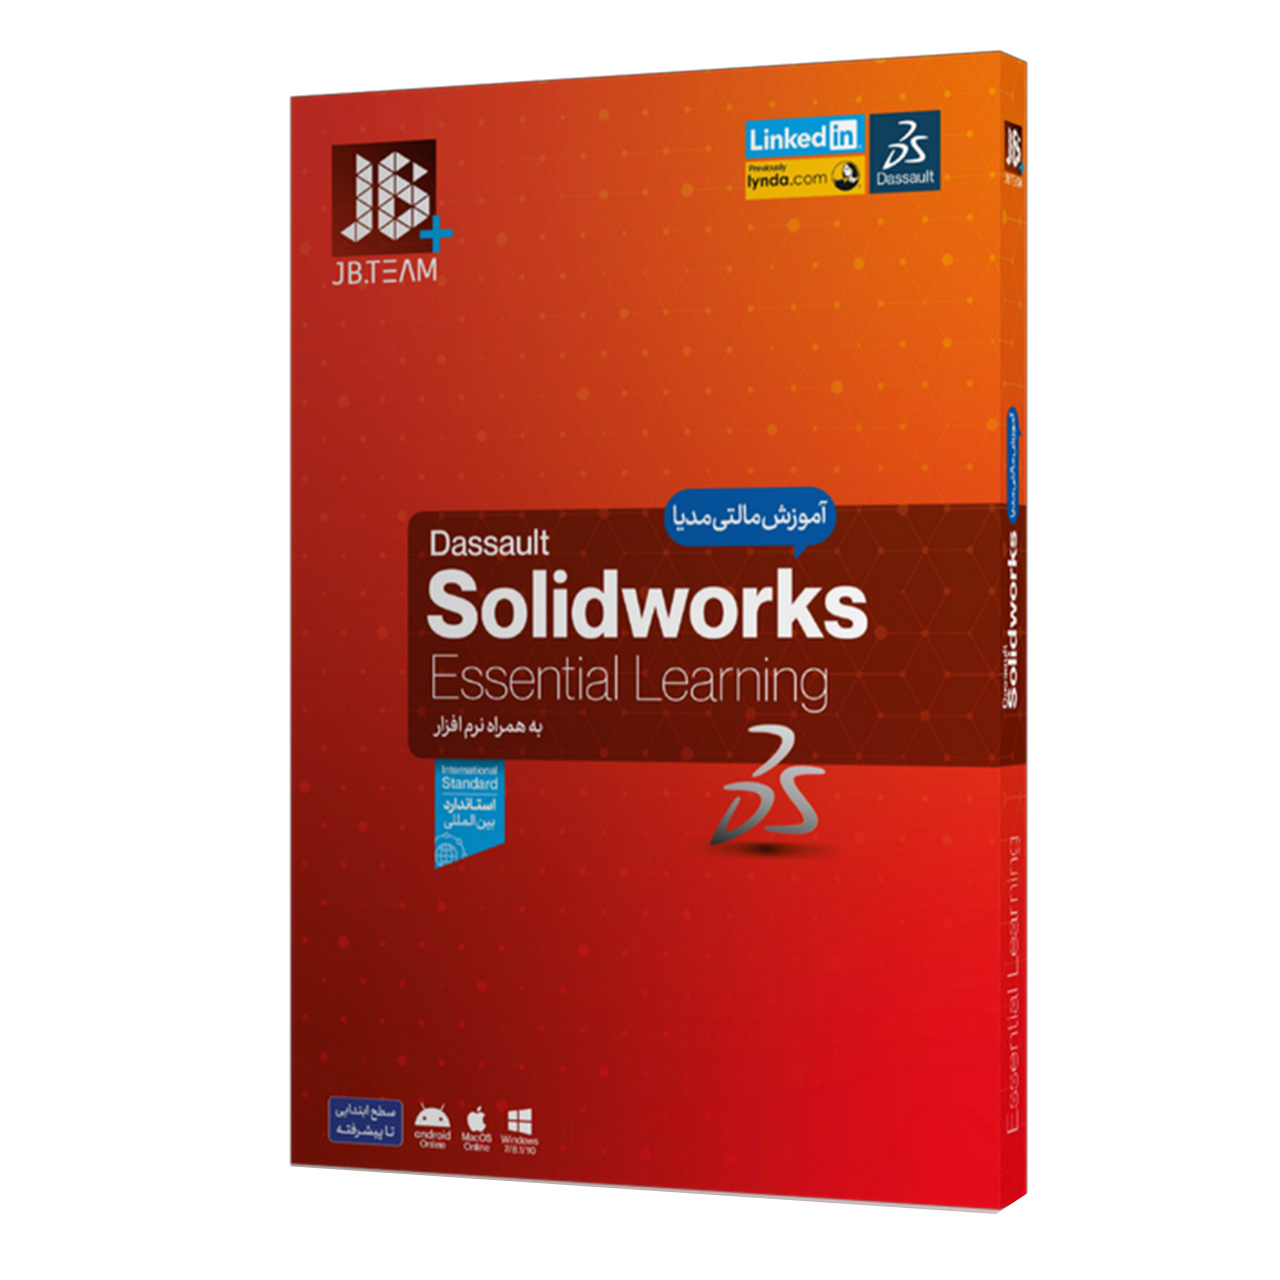  نرم افزار آموزش SOLIDWORKS 2020 نشر جی بی تيم	 